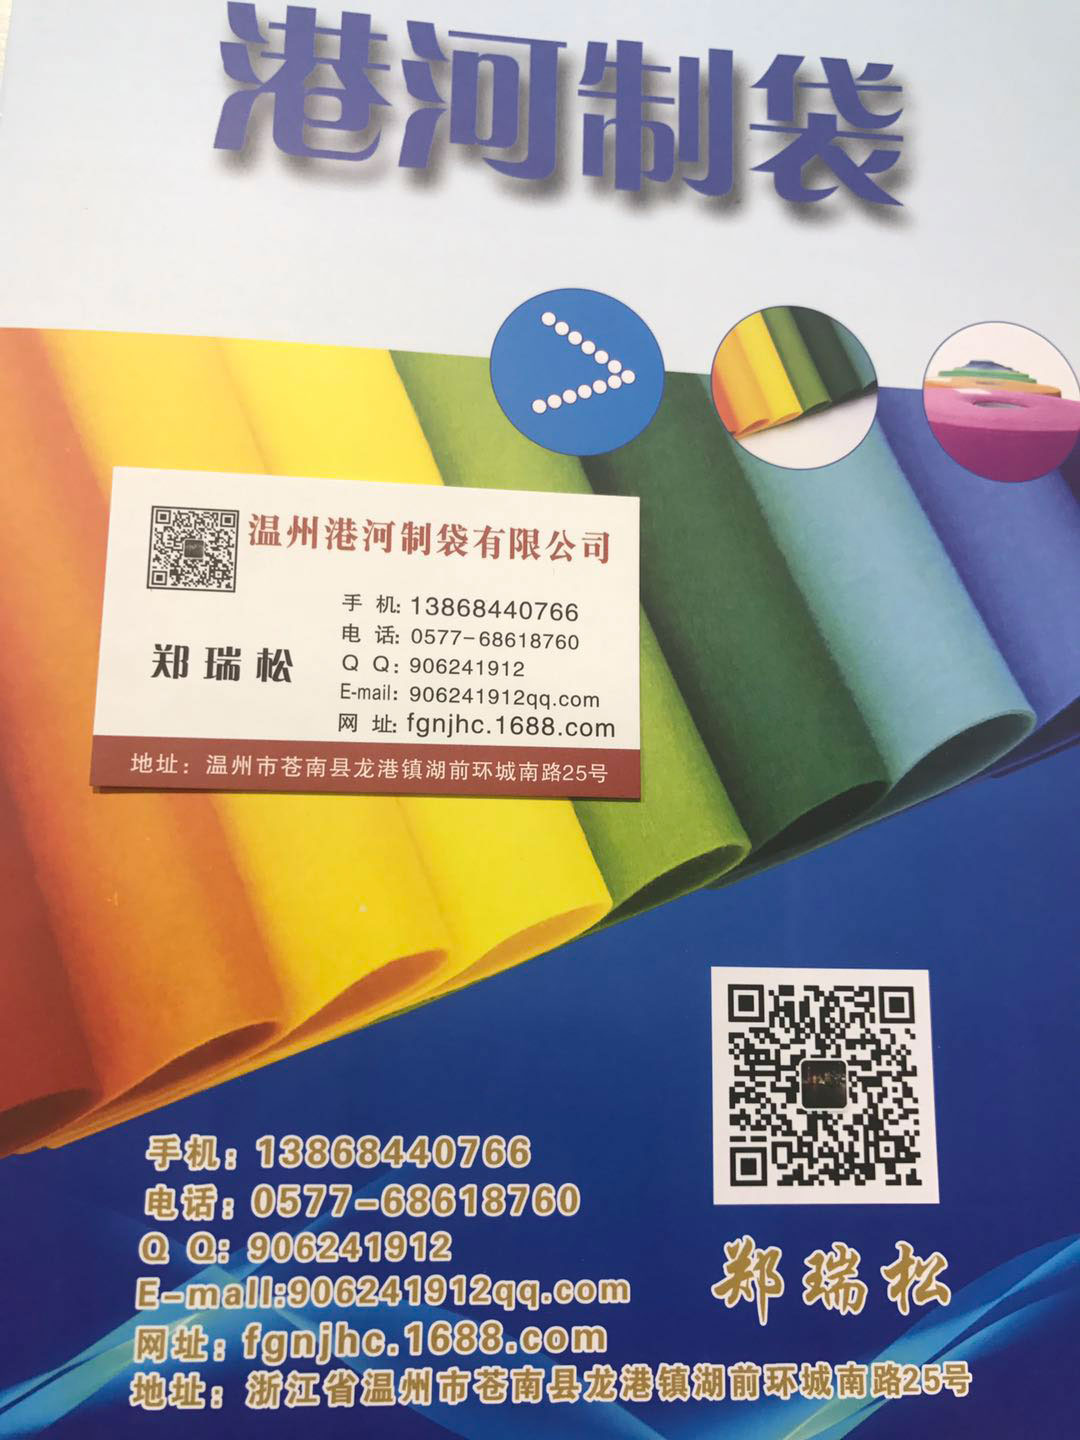 温州港河制袋有限公司-中国国际包装展-中国包装容器展